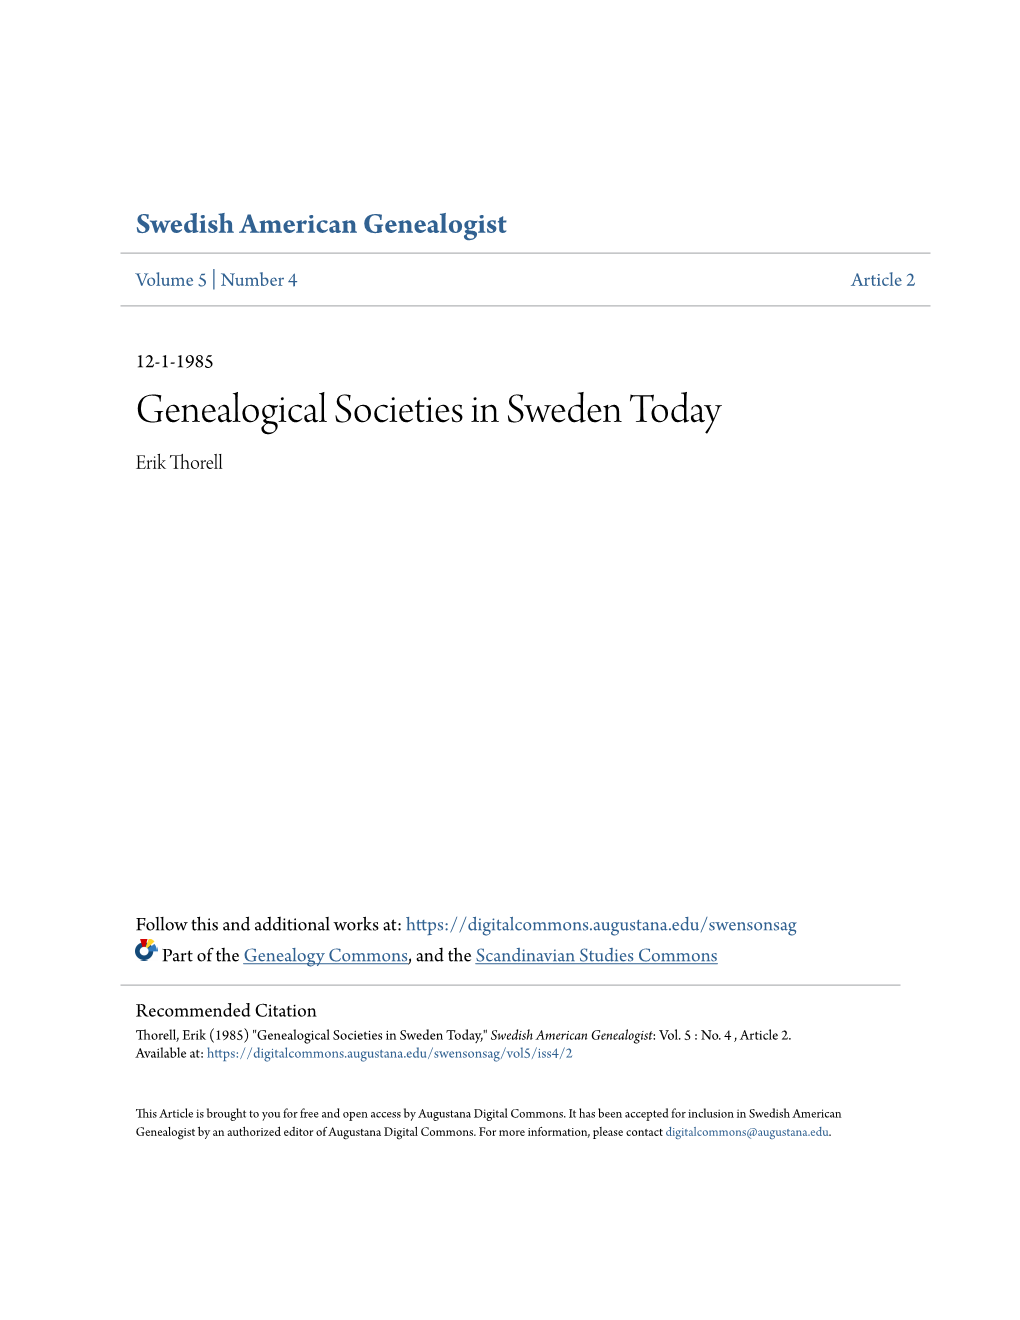 Genealogical Societies in Sweden Today Erik Thorell